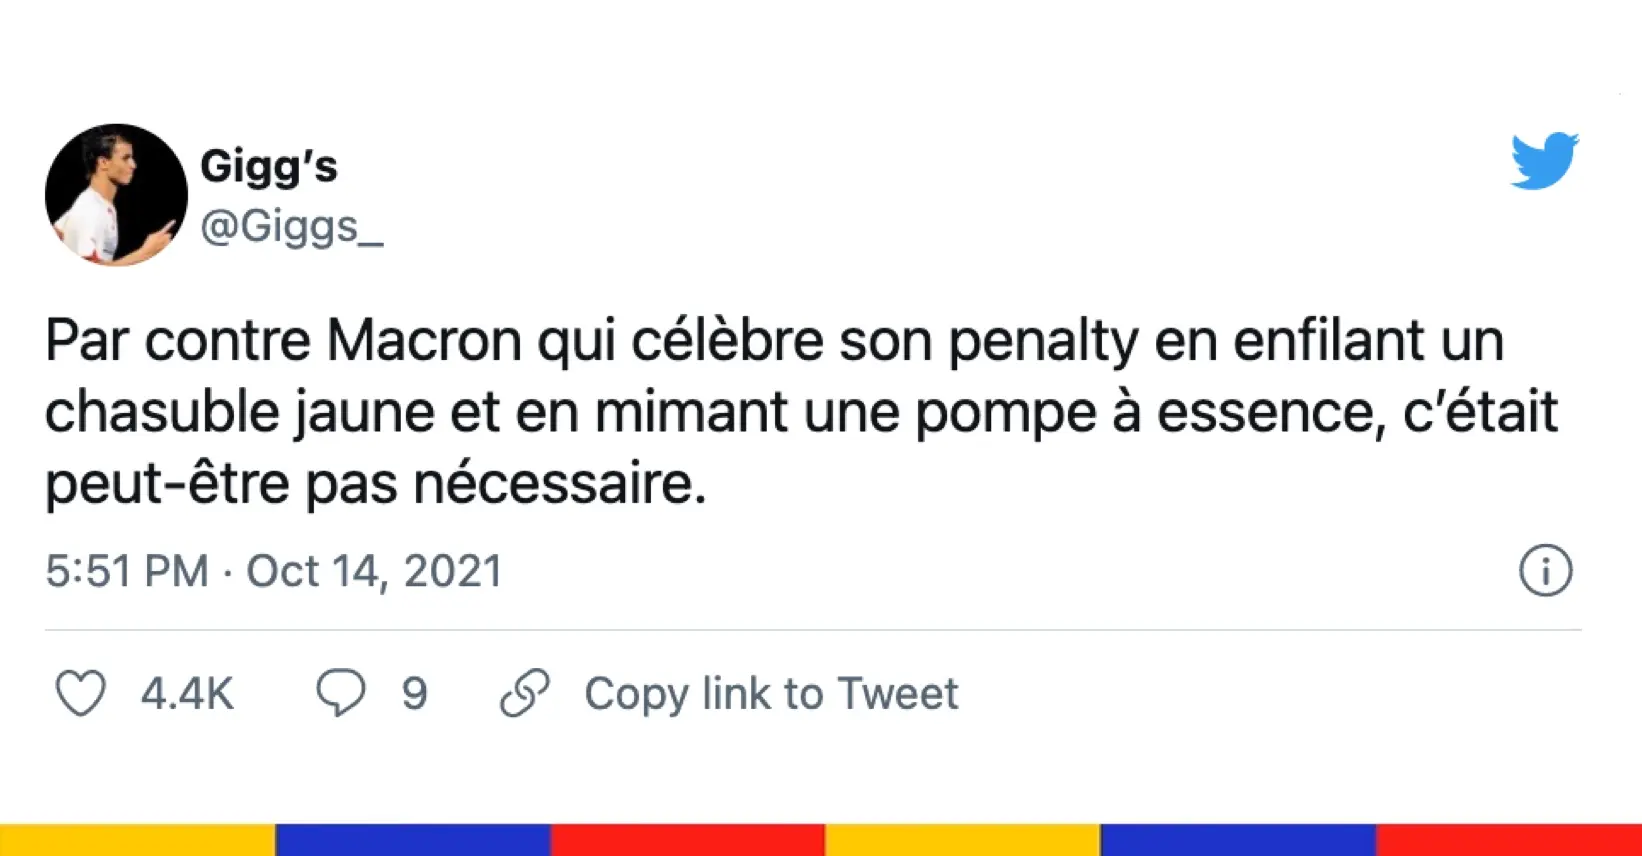 Le grand n’importe quoi des réseaux sociaux : Macron joue au foot